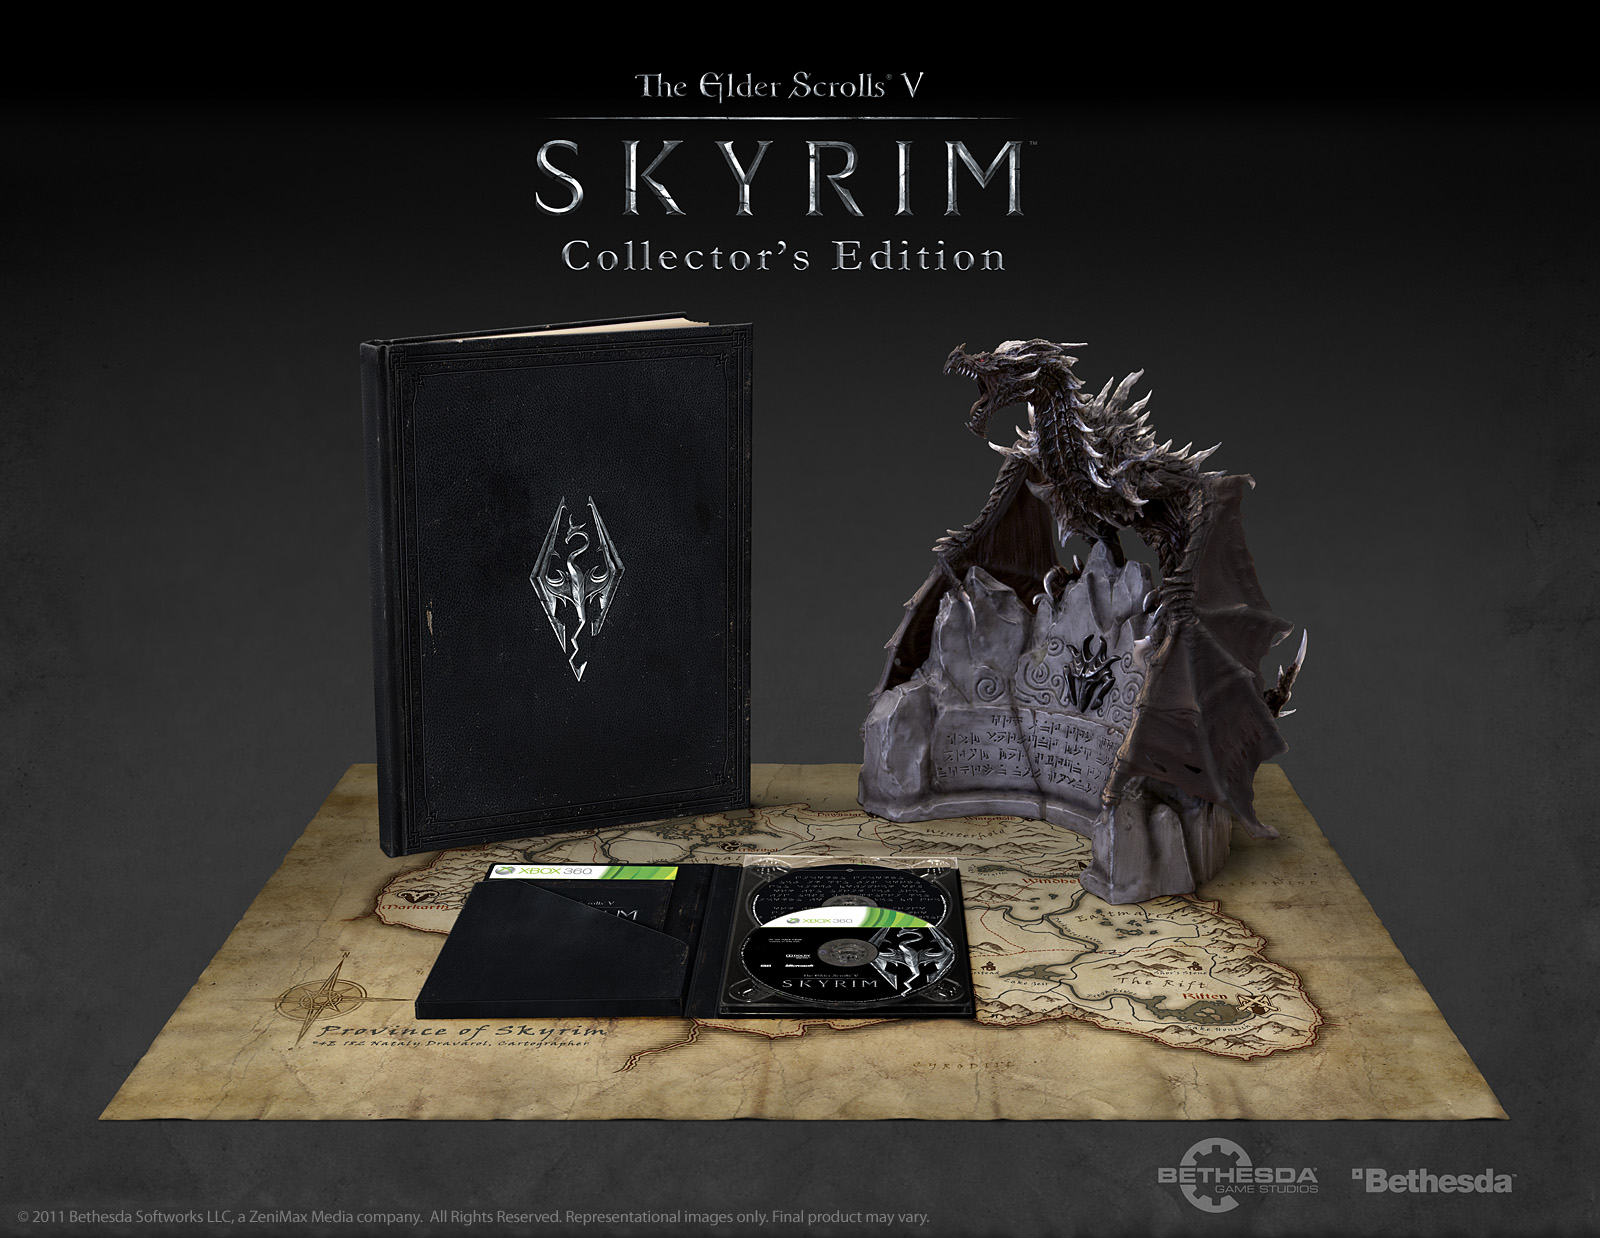 Skyrim collections. The Elder Scrolls v: Skyrim коллекционное издание. Коллекционное издание скайрим 5. Коллекционное издание ps3 Skyrim. Карта Скайрима коллекционное издание.